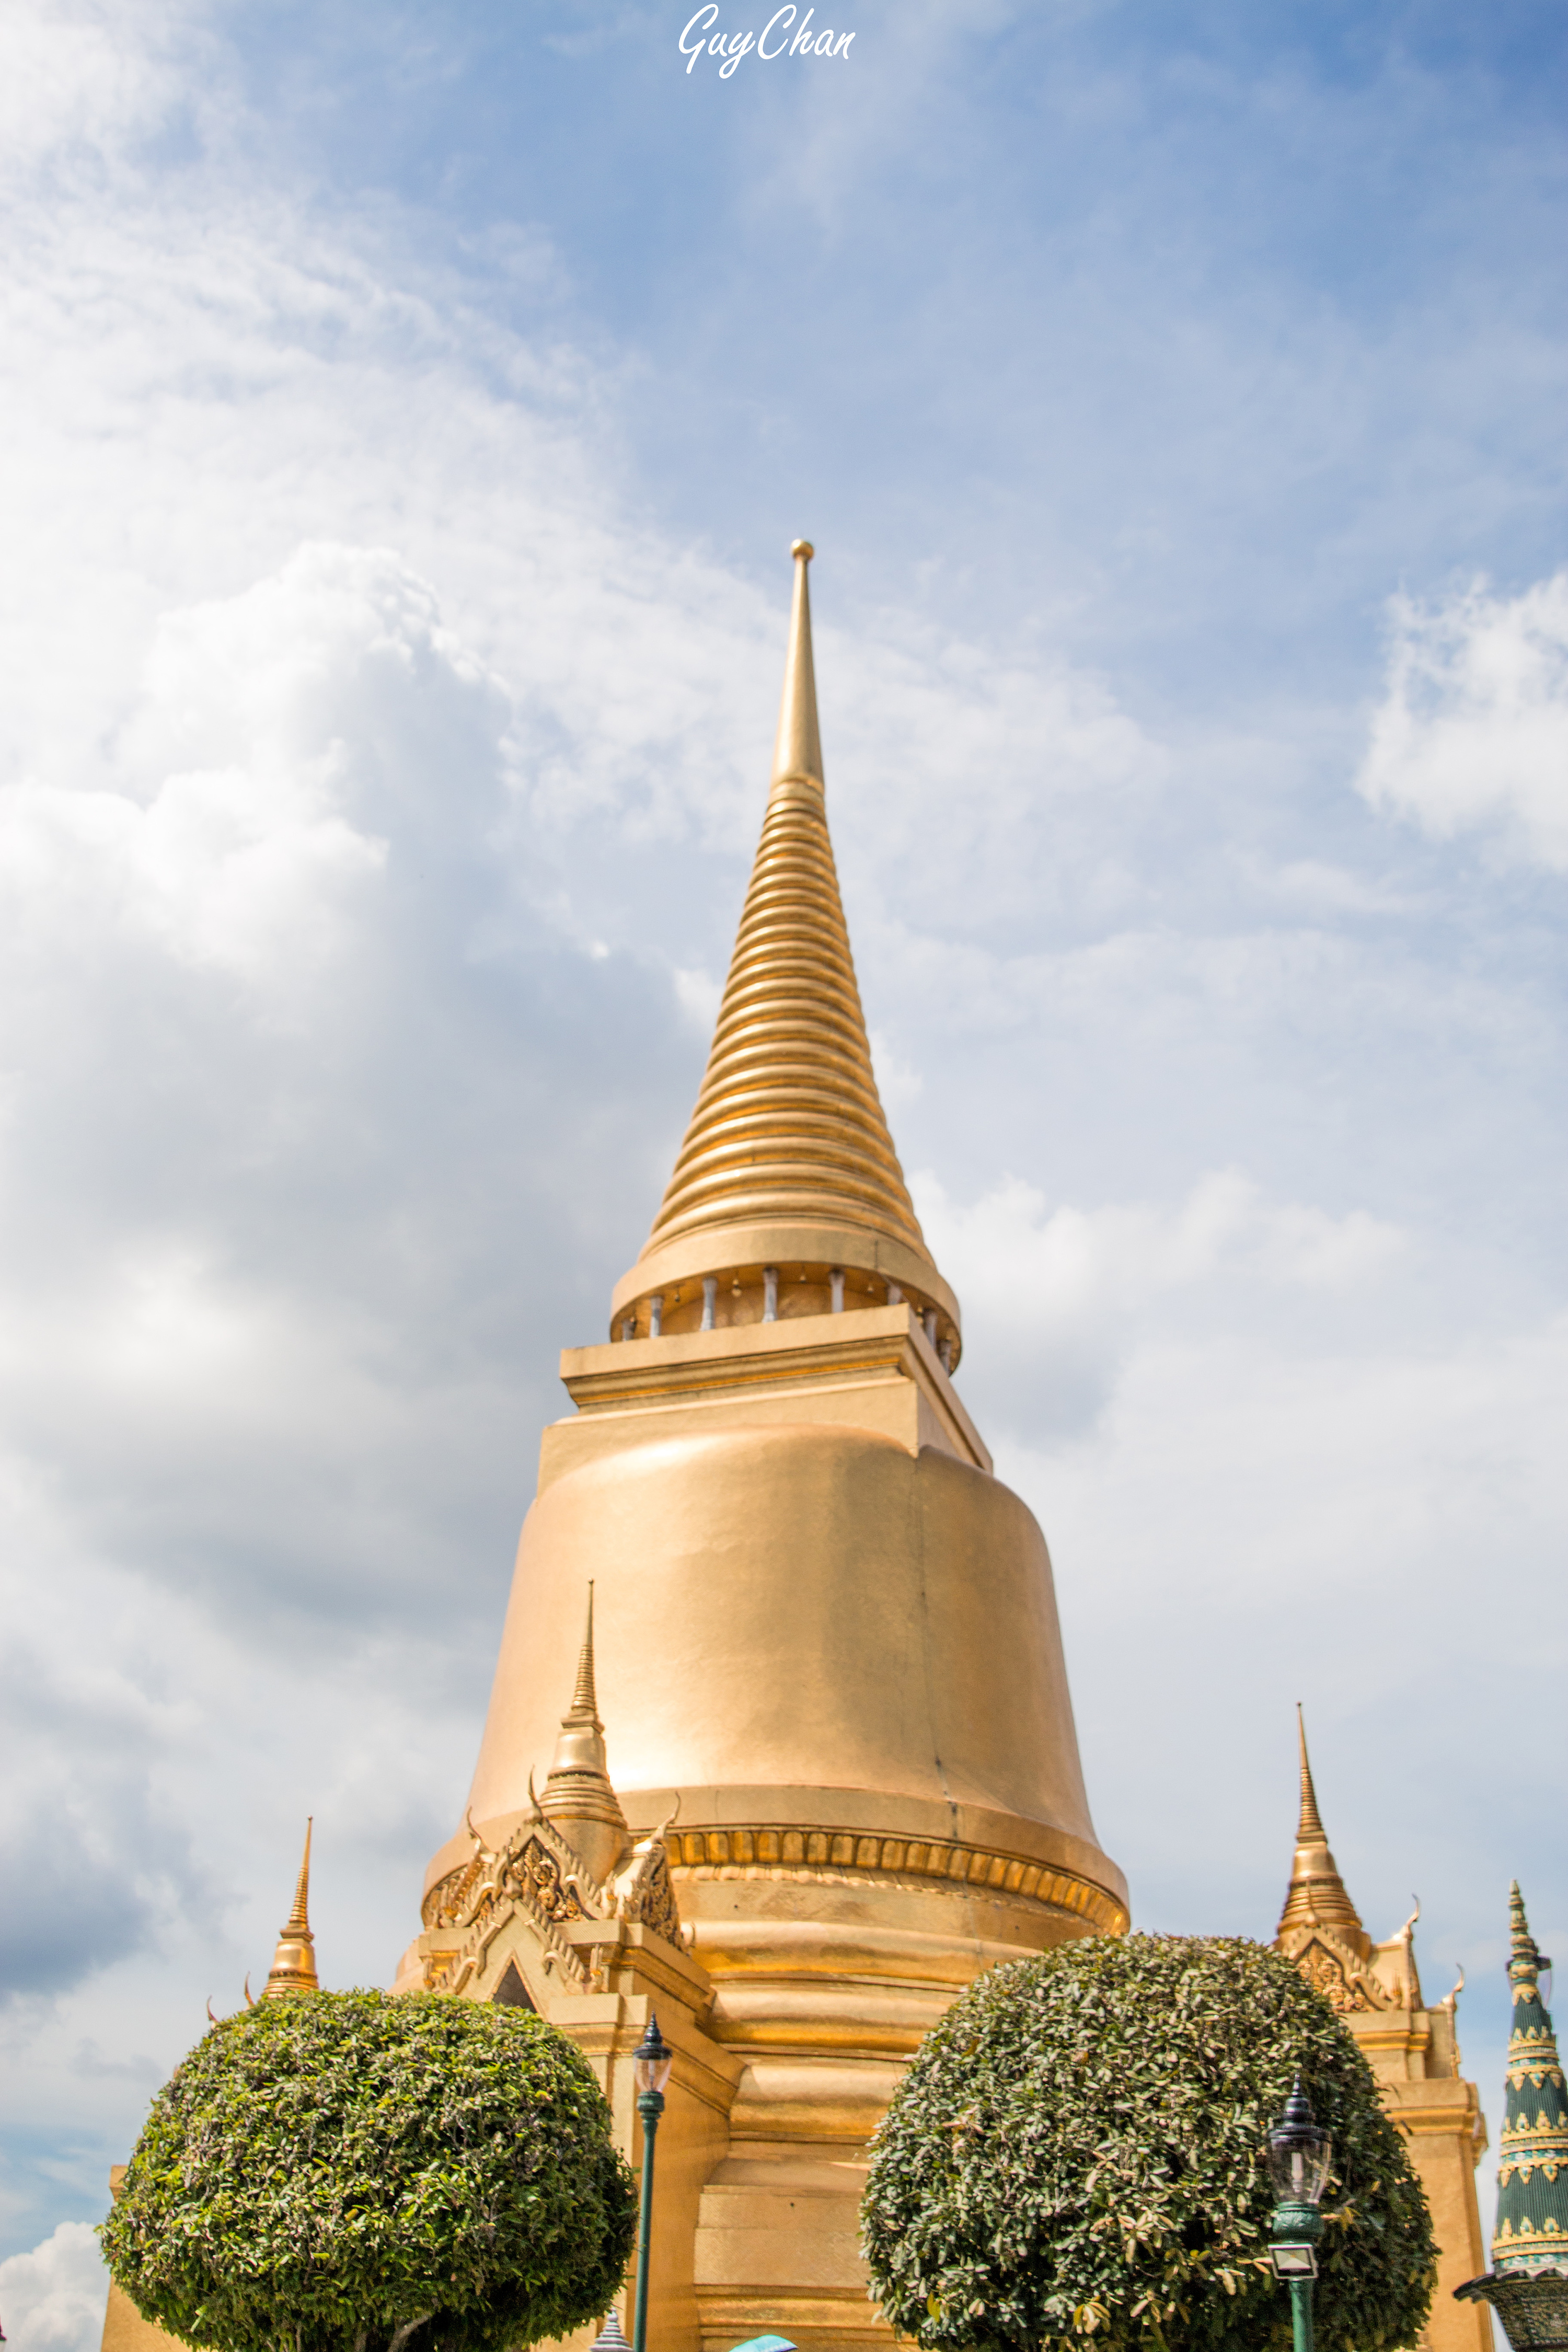 泰国芭提雅曼谷宫殿风景高清图片_4K风景图片高清壁纸_墨鱼部落格